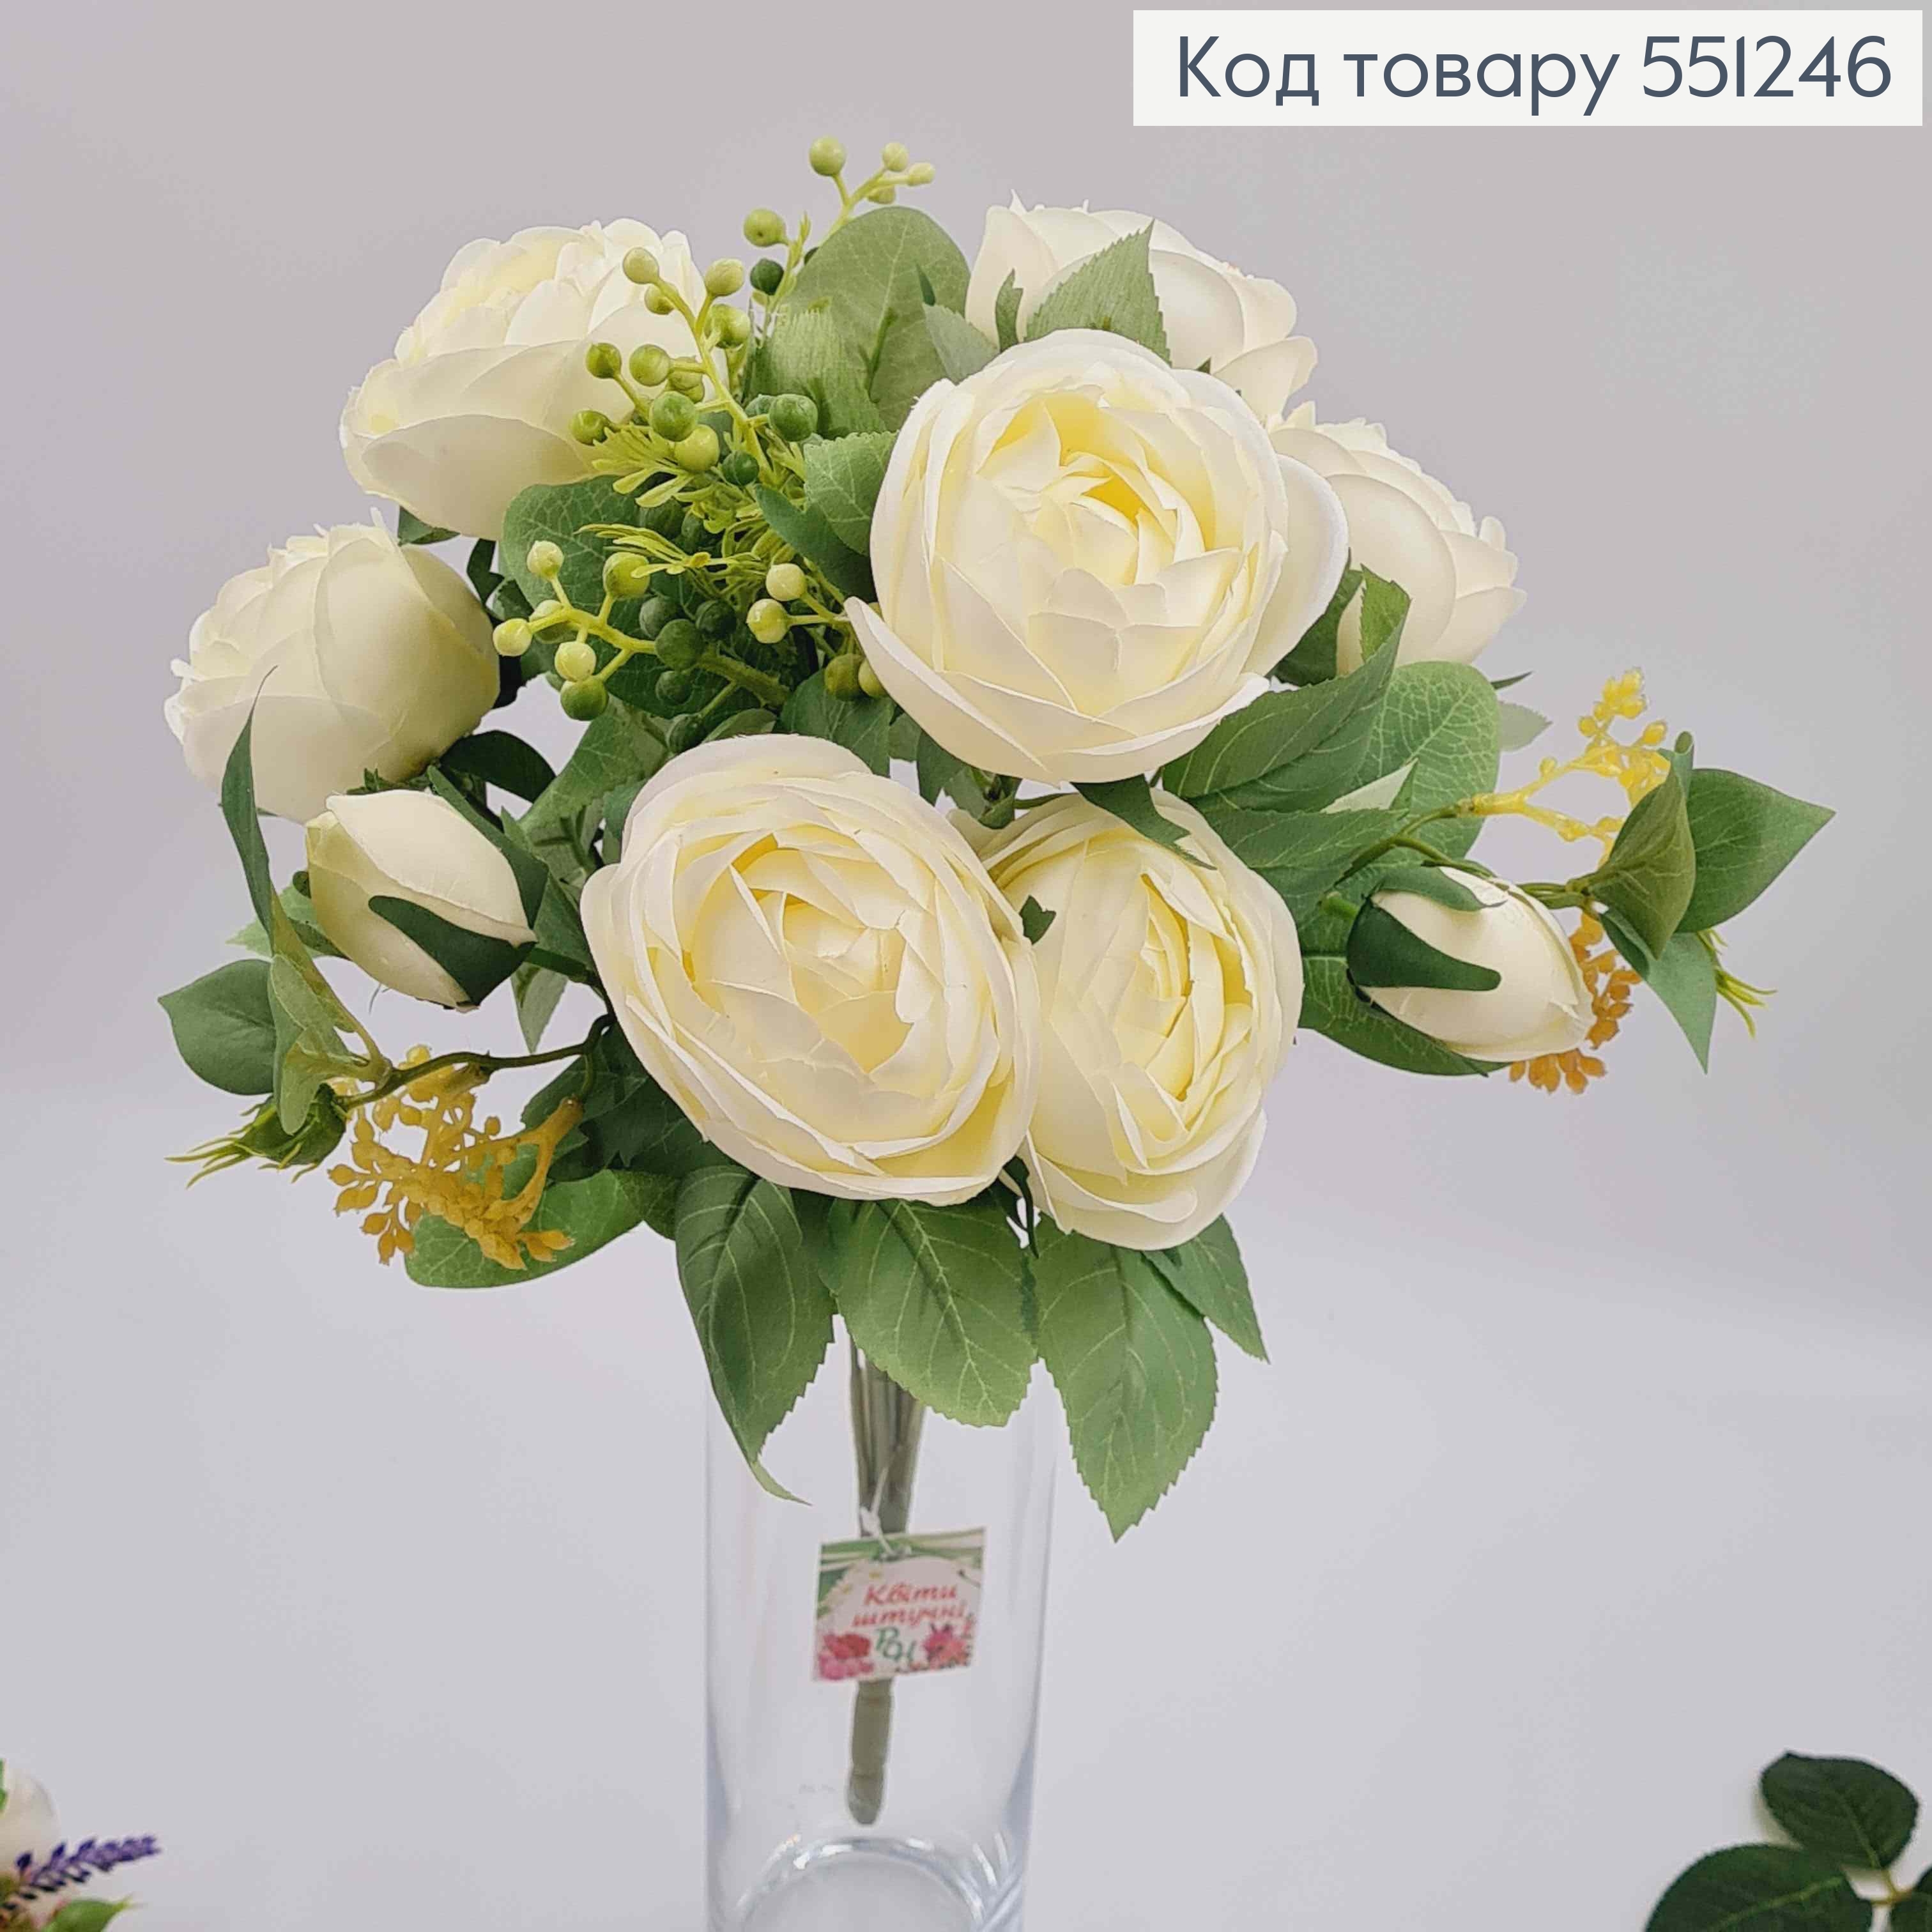 Композиция "Букет АИВОРИ розы Камелия с зеленым декором", высотой 46см 551246 фото 2